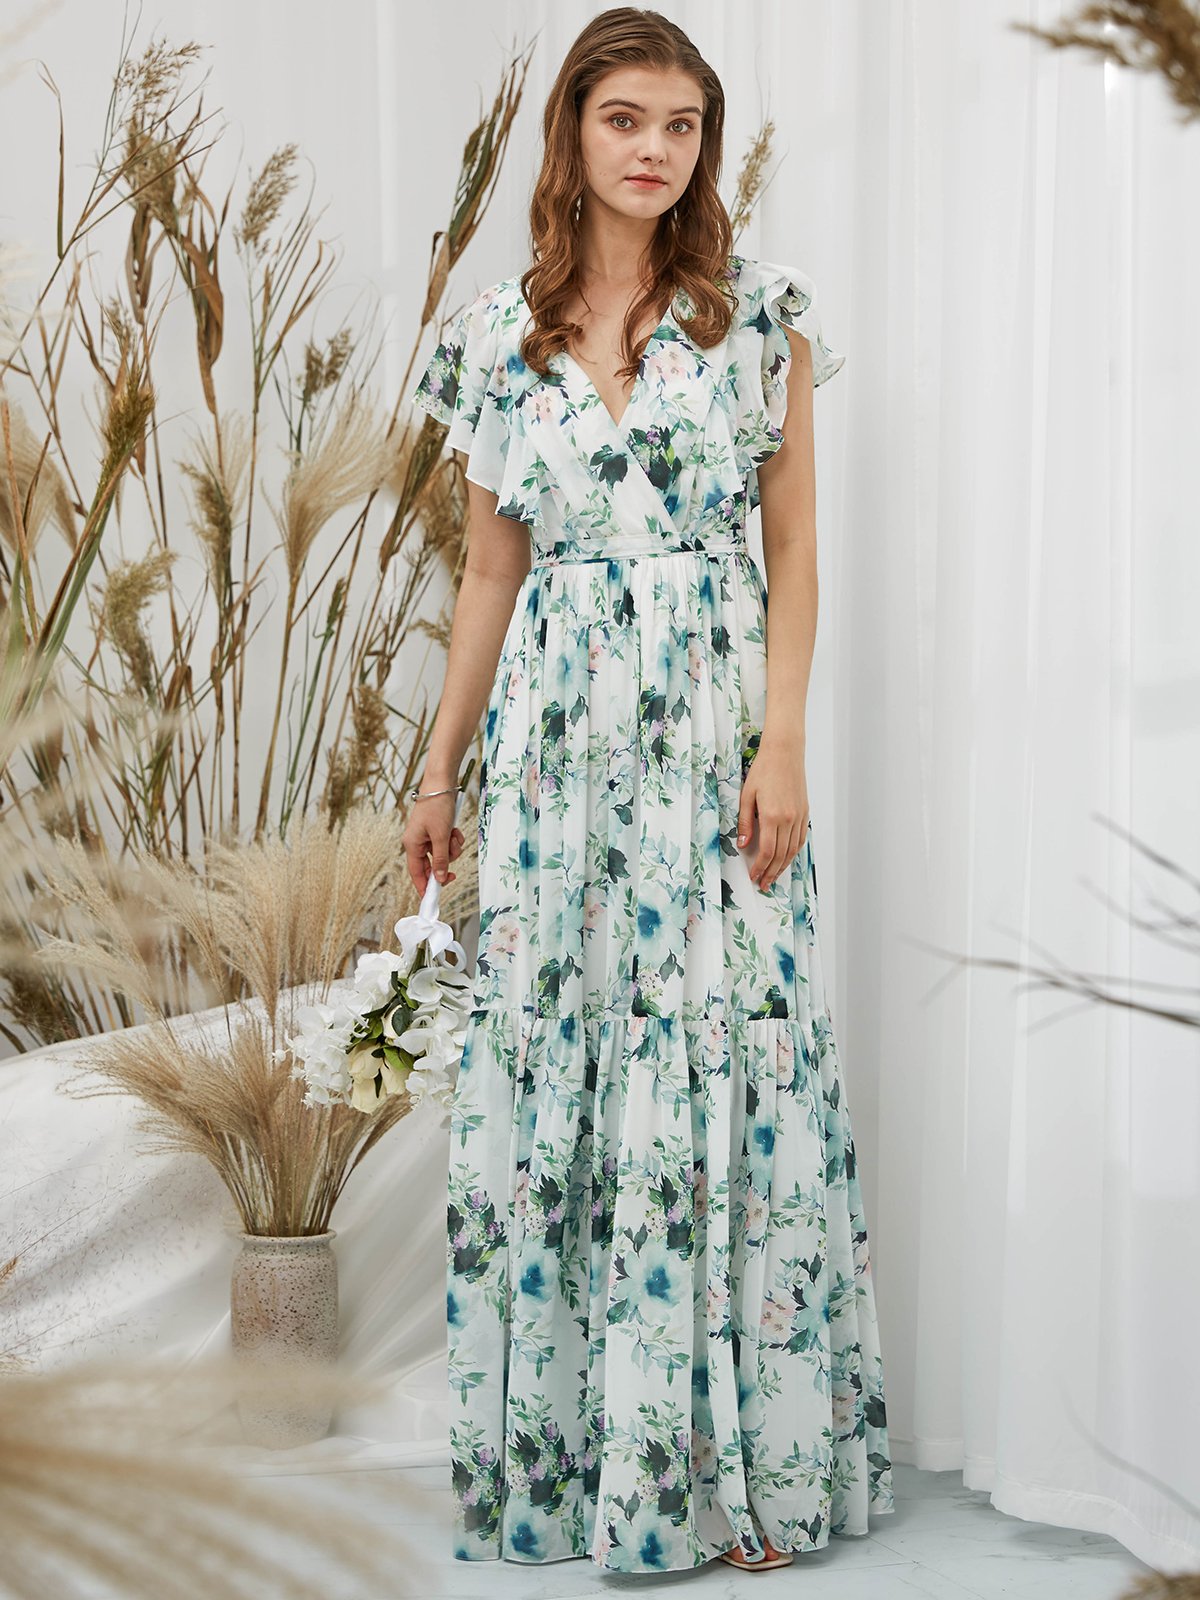 MissJophiel Scollop Sleeves Chiffon V Neck Print Floral Sage Floor Length Formal Evening Gown